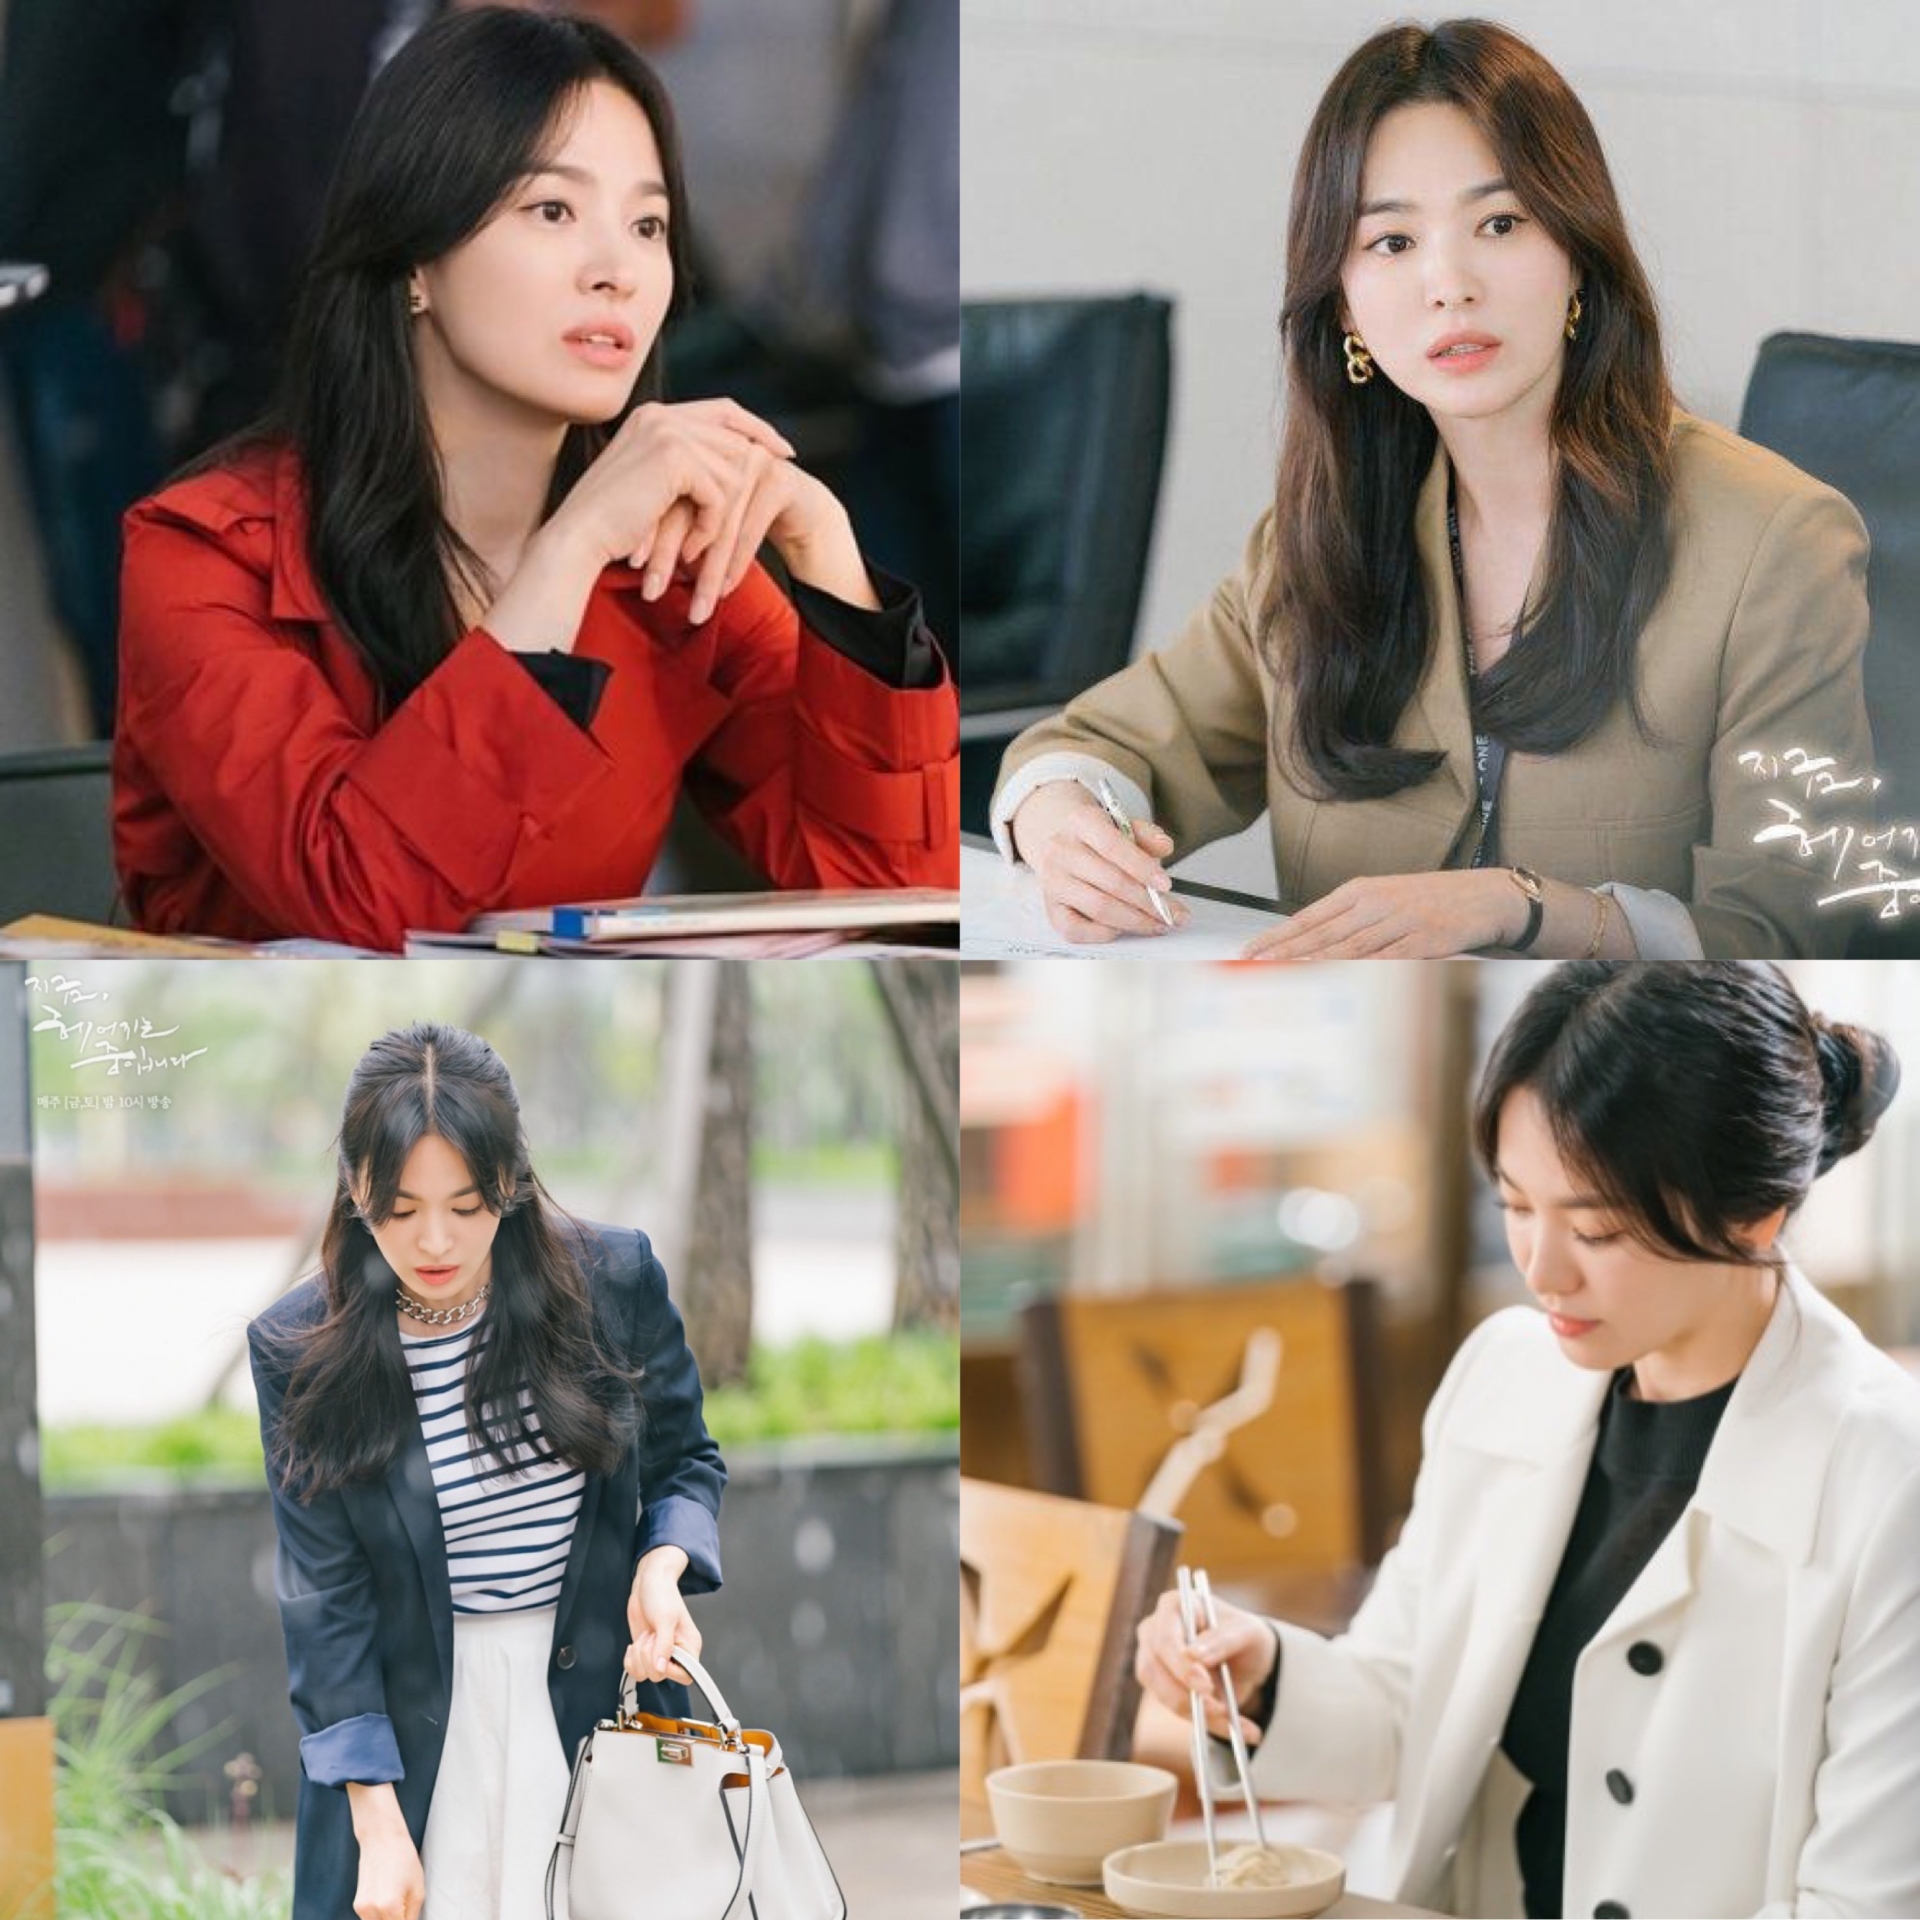 Style của Song Hye Kyo trong phim mới rất đơn giản nhưng vẫn toát lên sự thanh lịch và sang chảnh đến bất ngờ. Phong cách trưởng thành của người đẹp nhận được vô số lời khen từ khán giả.